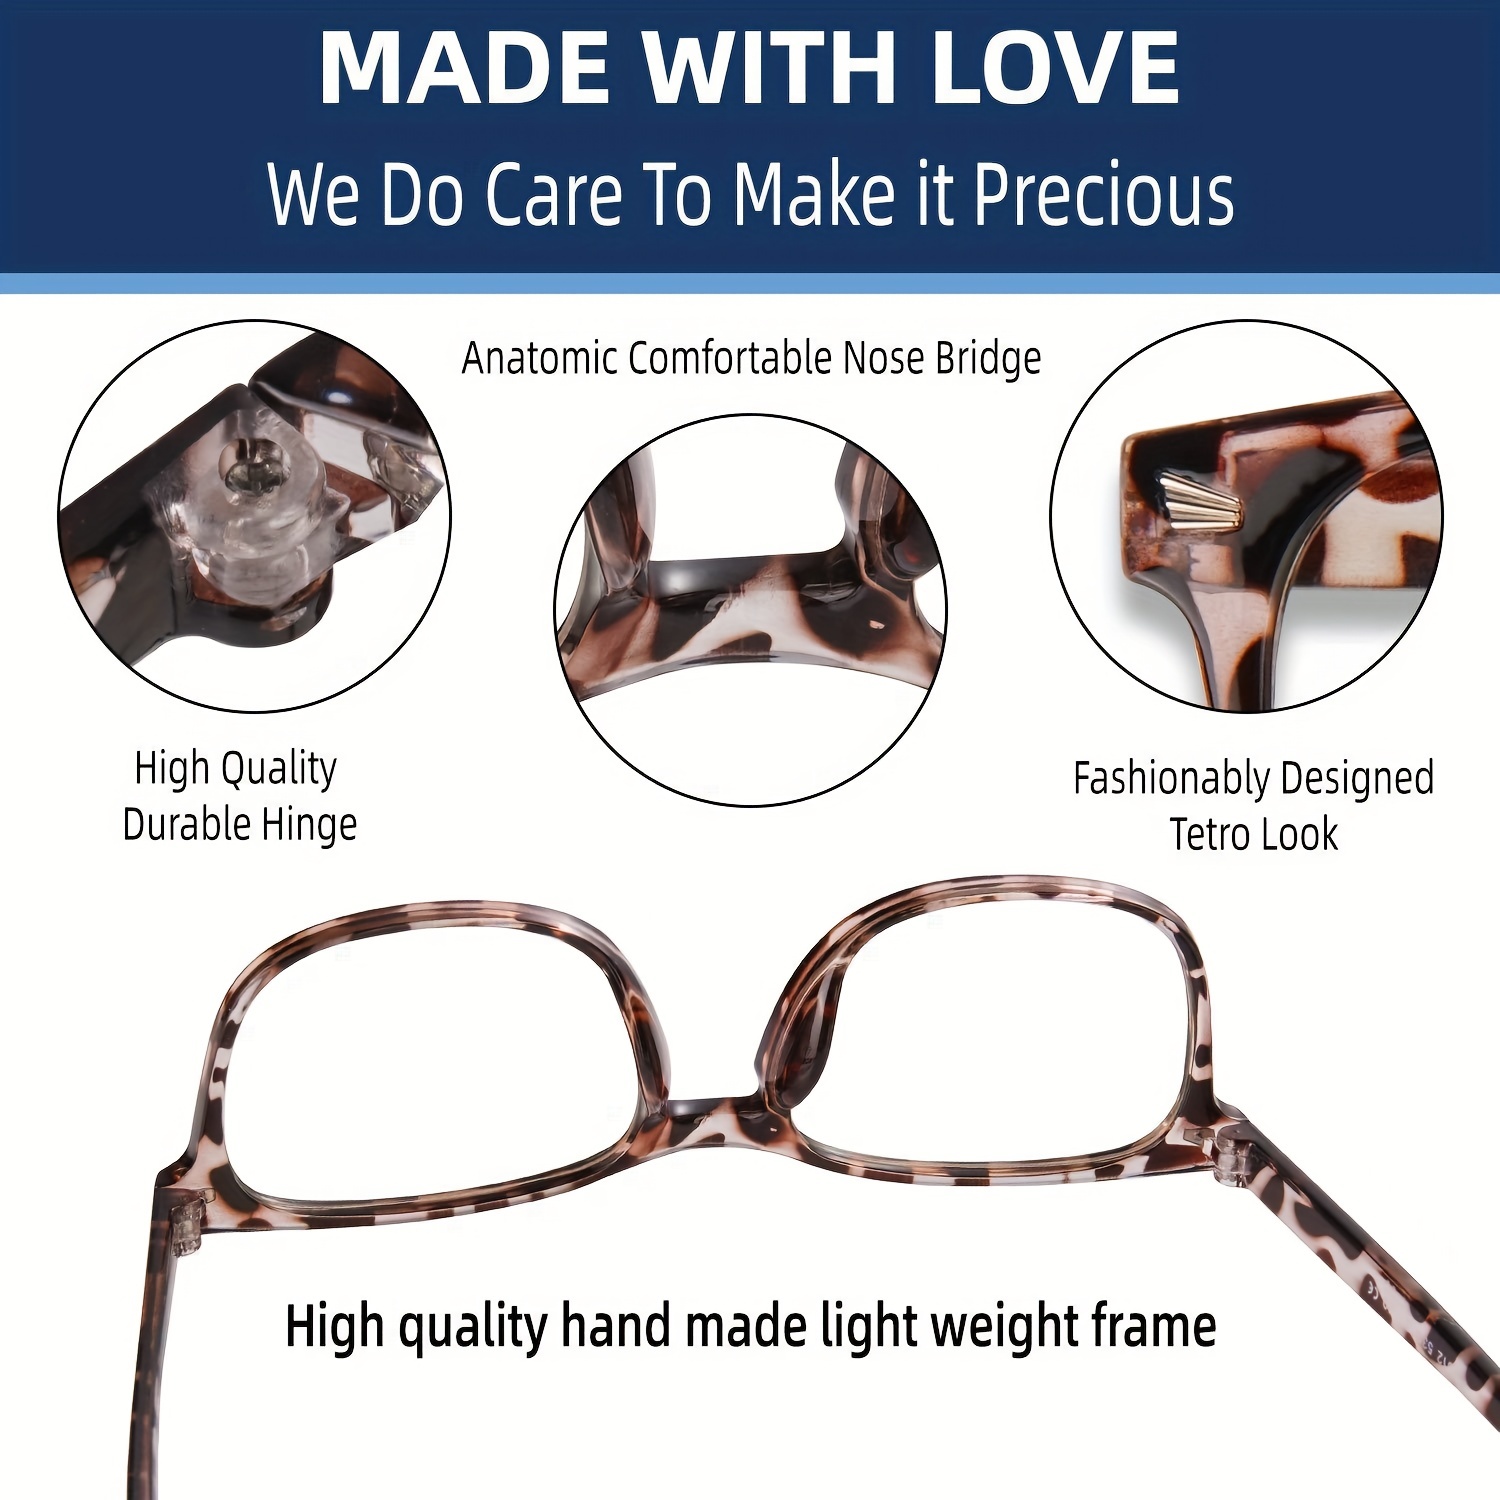 Oilway Blue-Light Blocking Glasses Computer Reading/Gaming/TV/Phones  Glasses Fashion Anti Eyestrain UV Glasses for Women Men